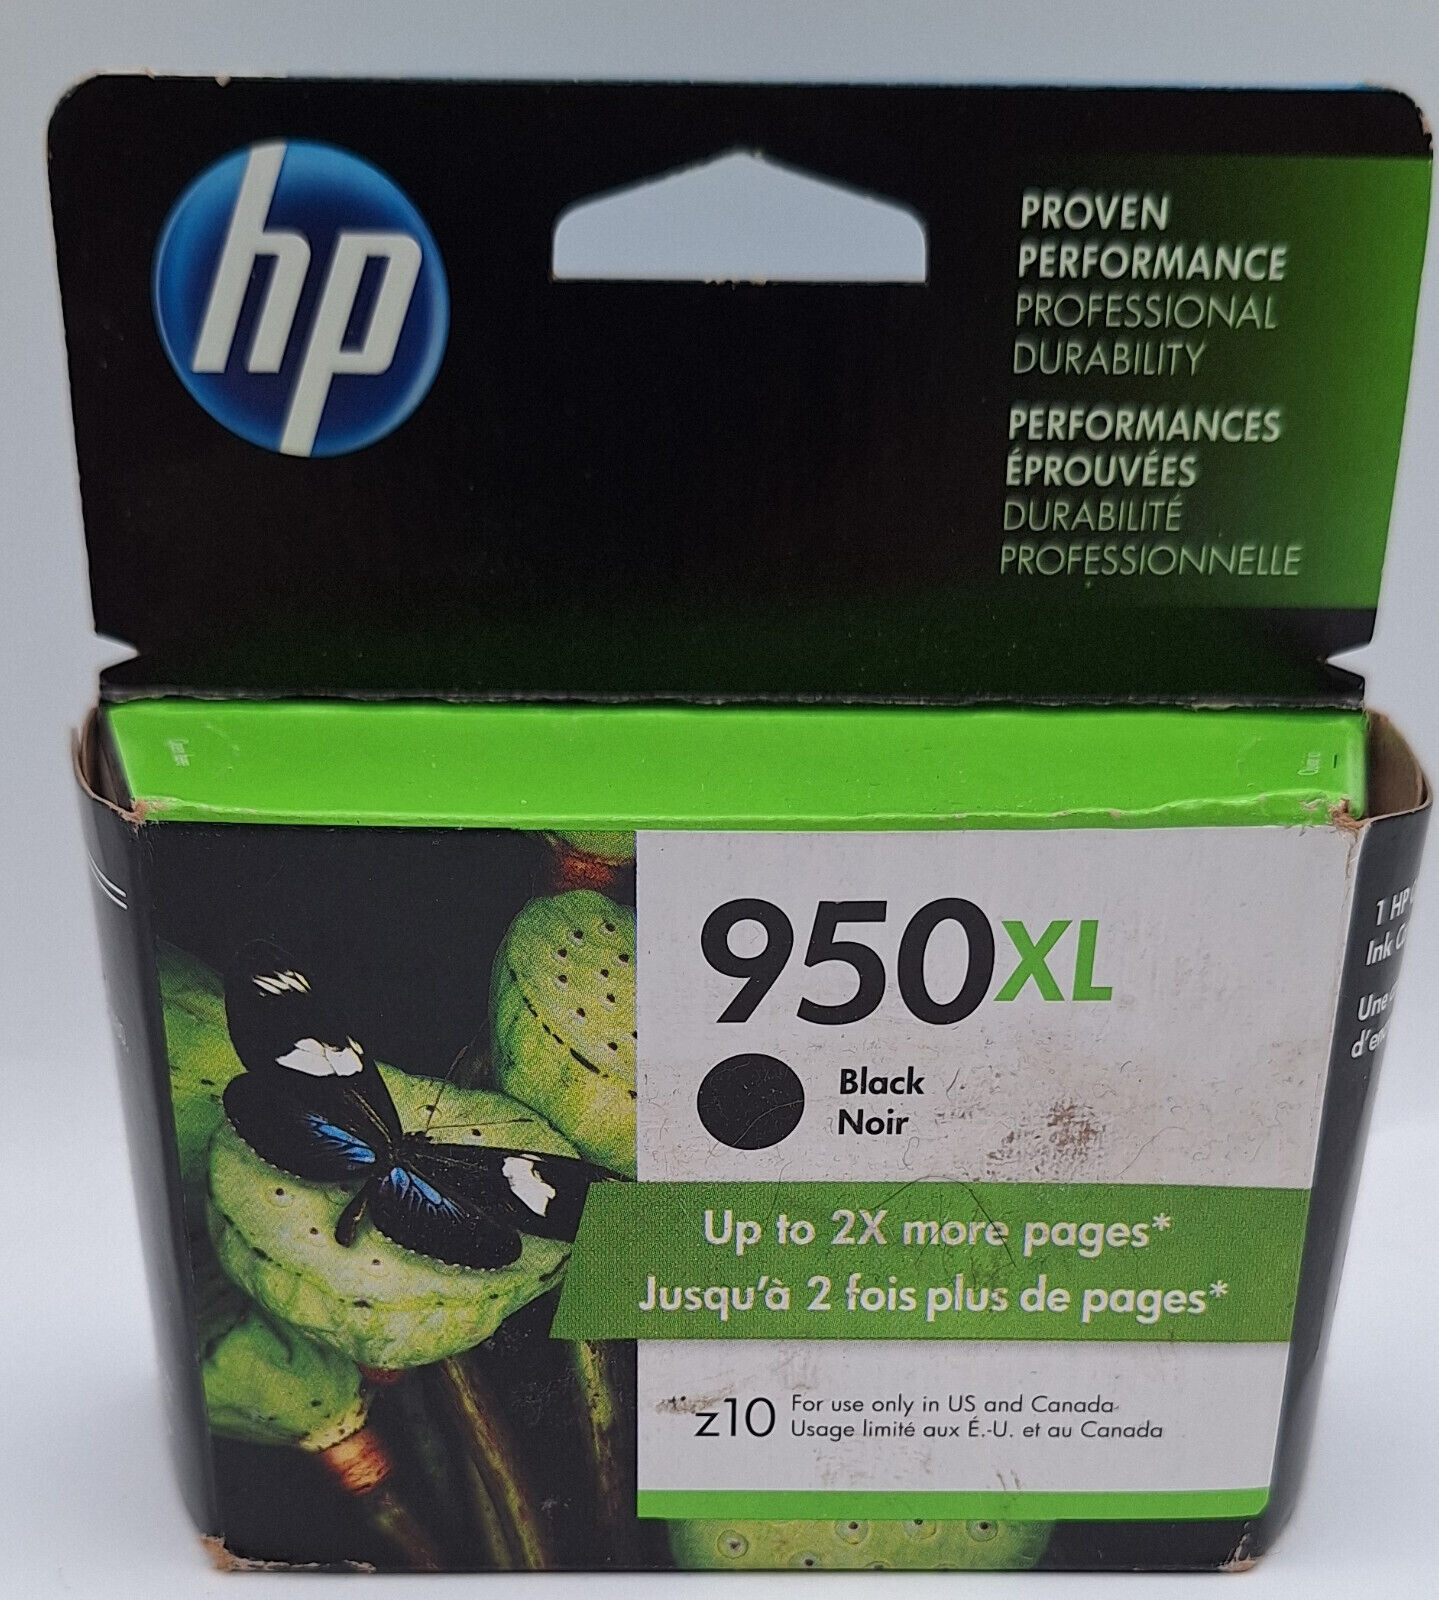 Geniune HP 950XL ink cartridge